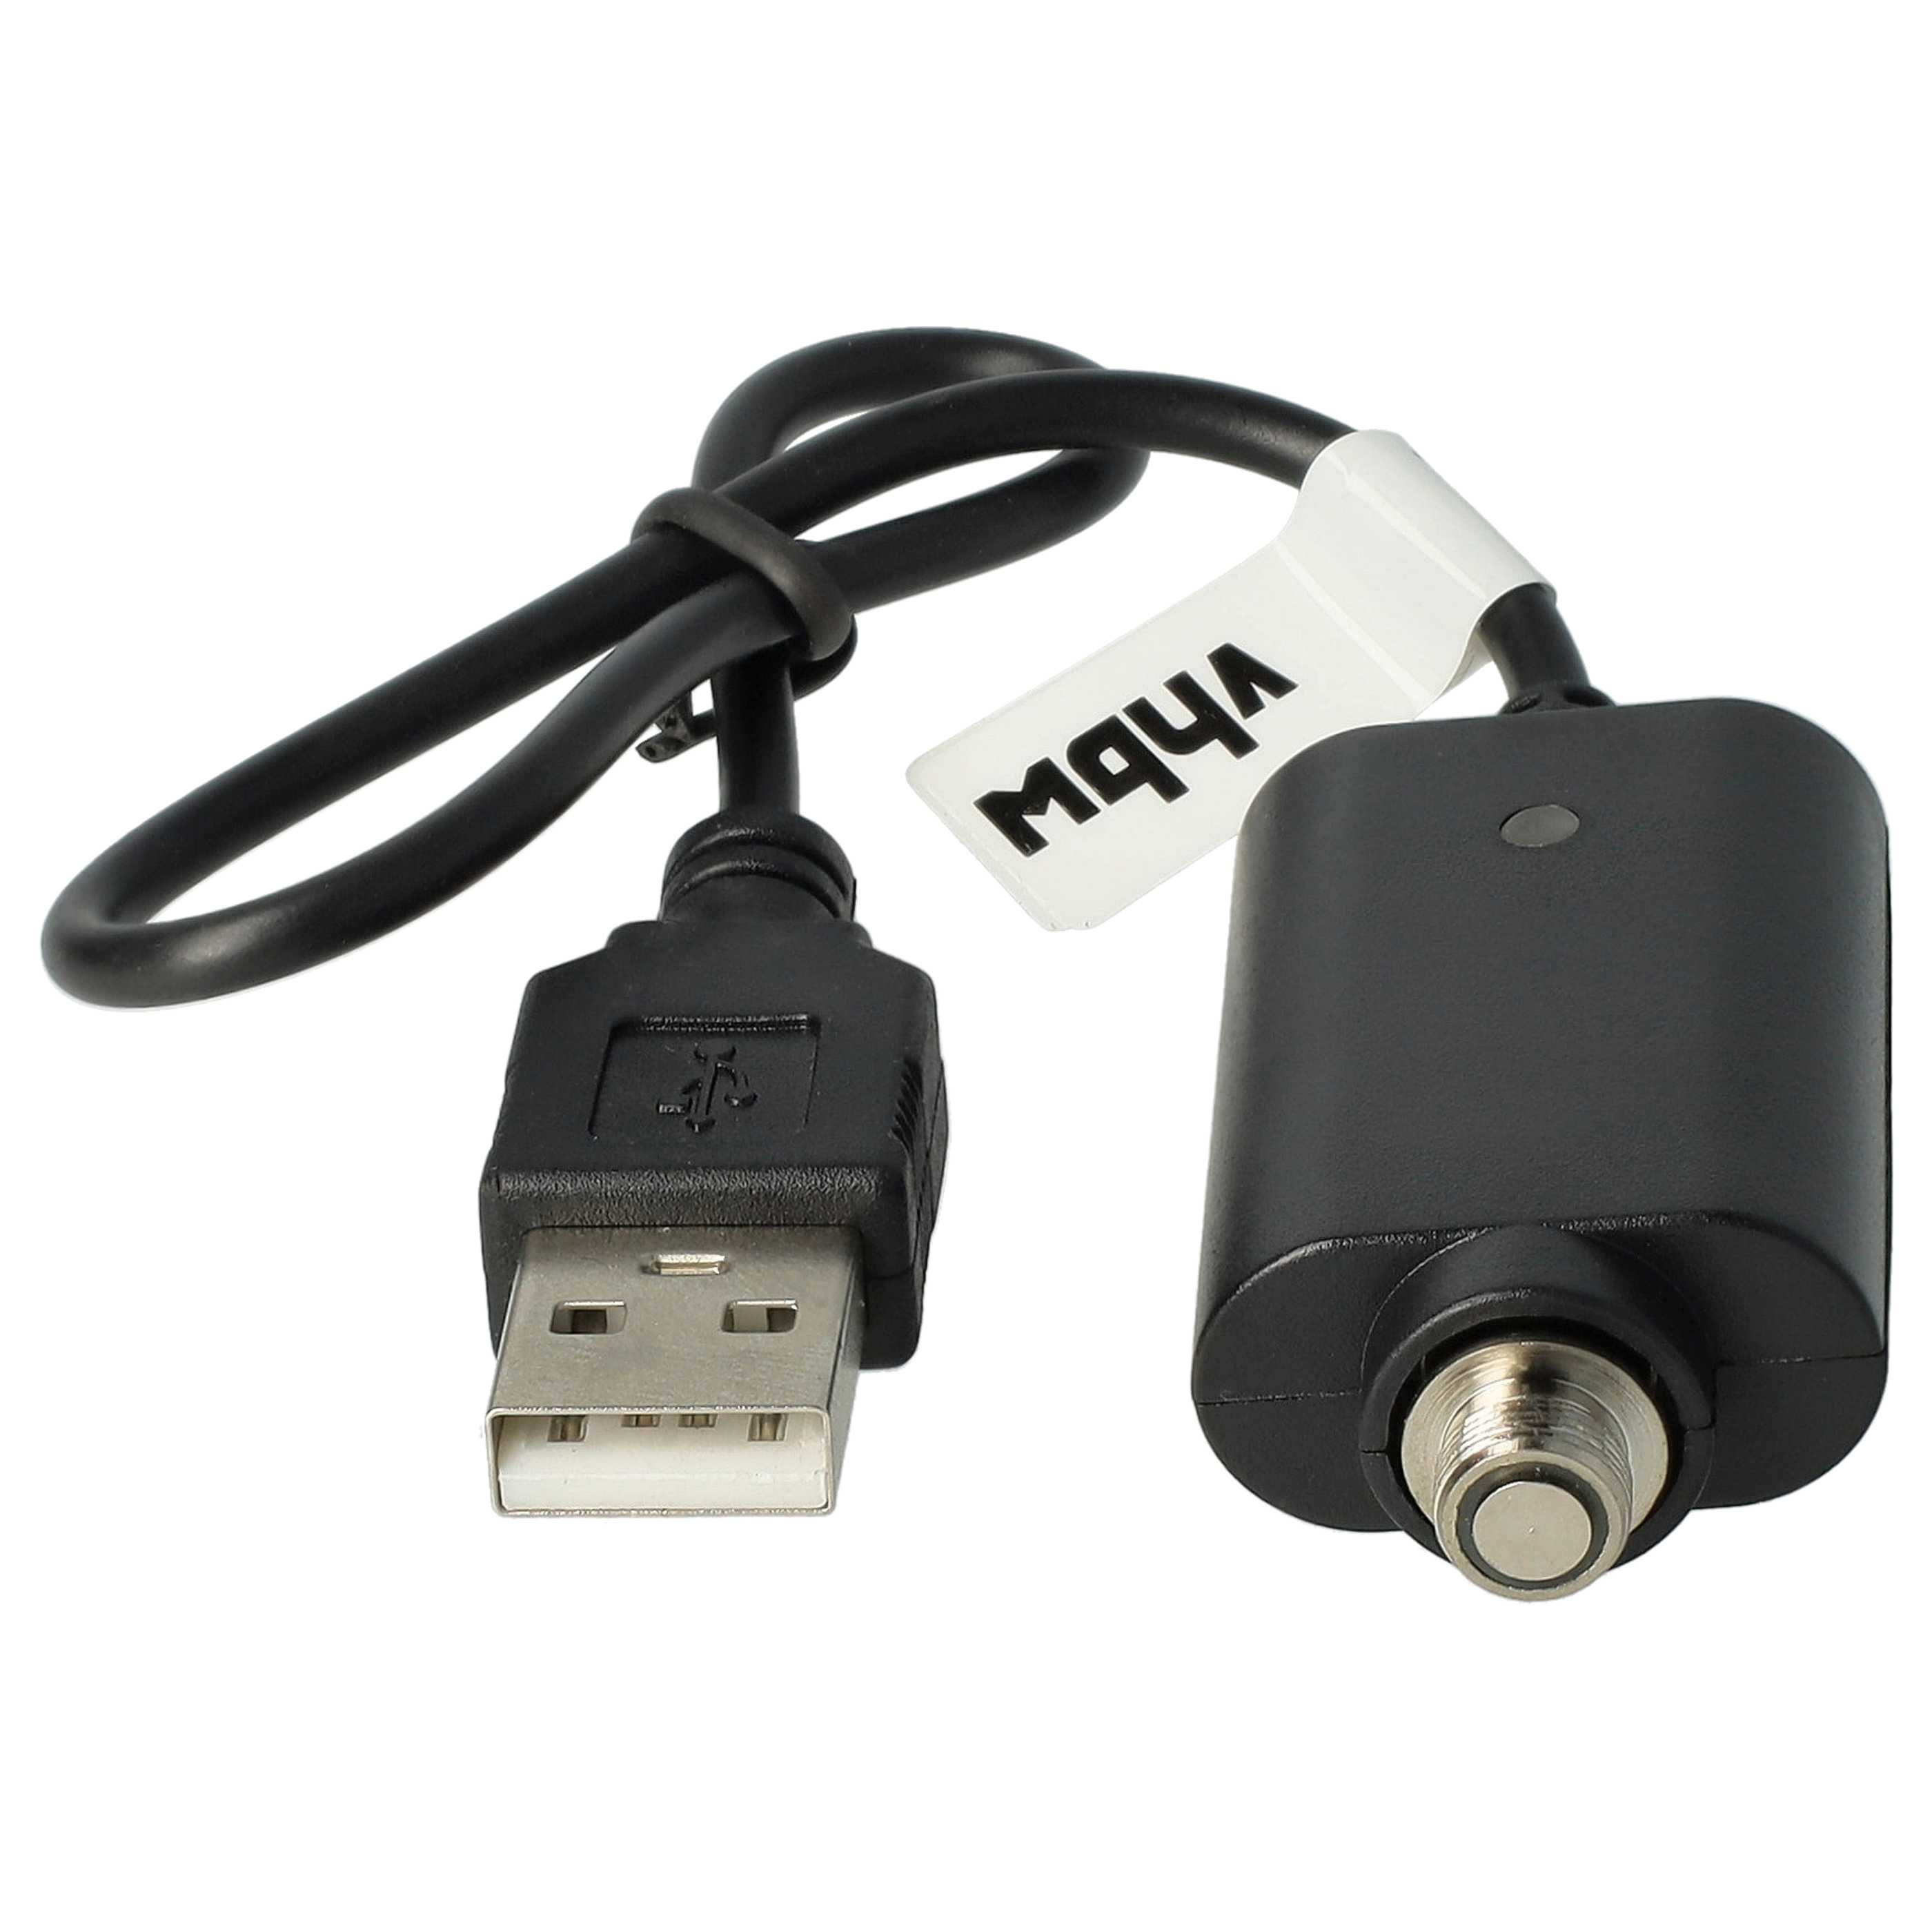 vhbw caricatore USB compatibile con diverse sigarette elettroniche con attacco filettato - cavo da 25cm